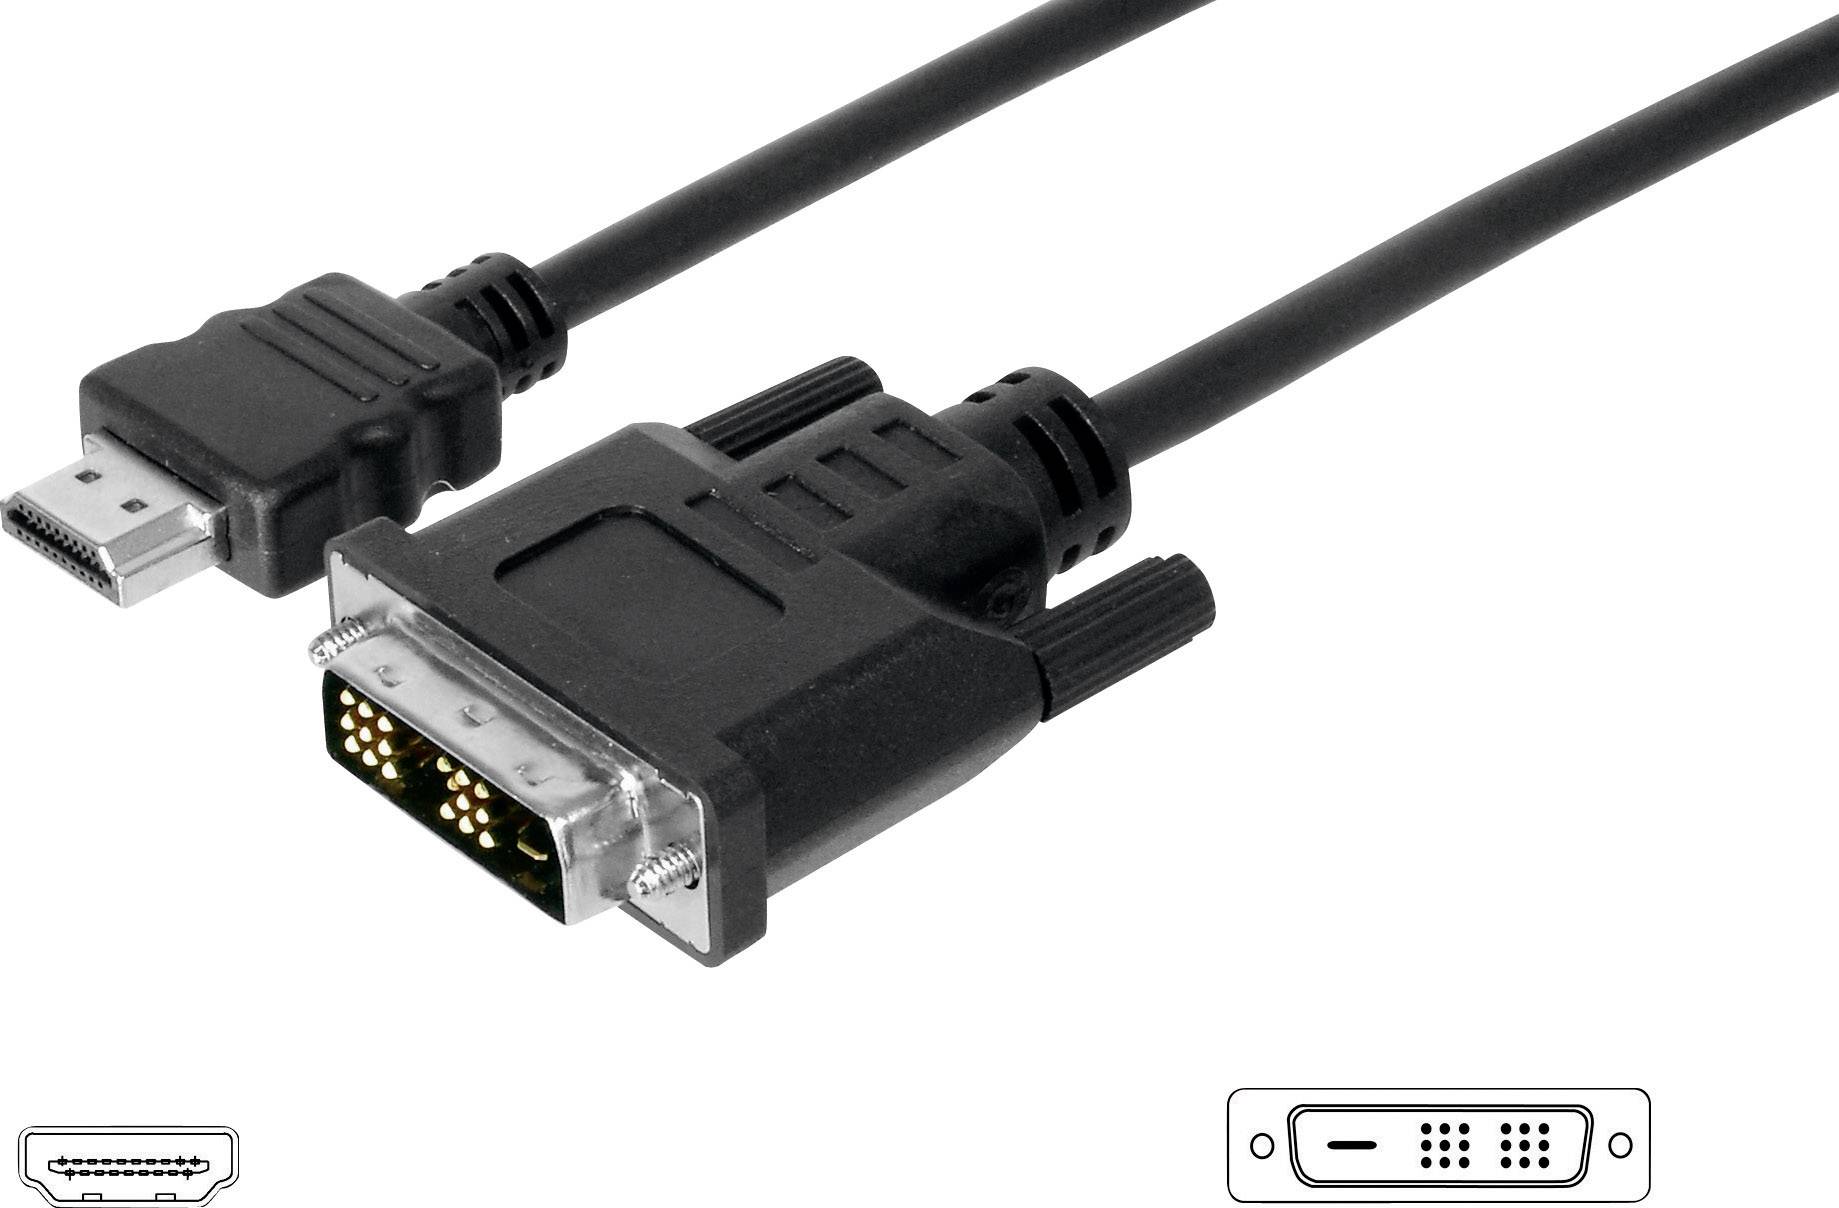 ASSMANN HDMI zu DVI-D 18+1 Anschlusskabel 3m schwarz bulk